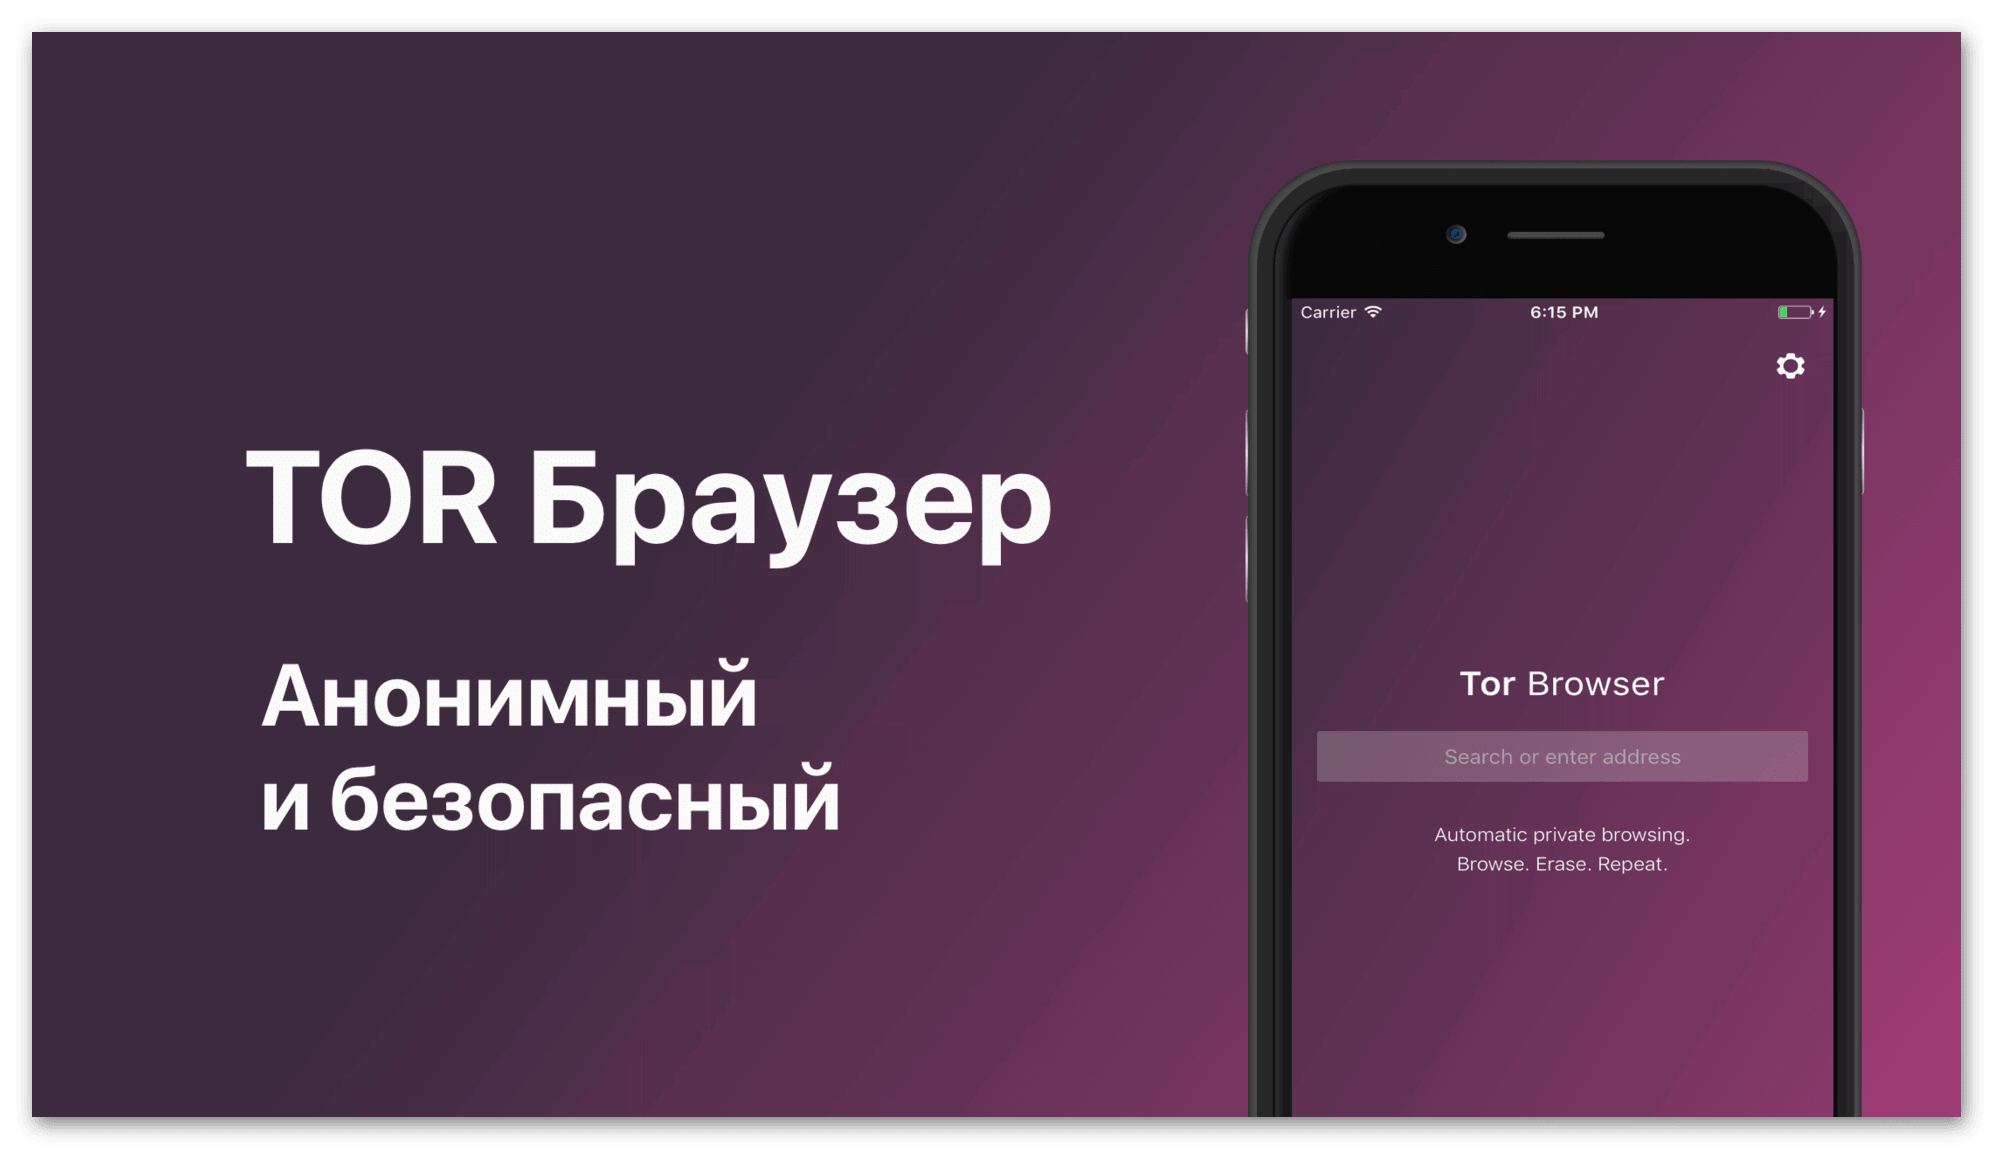 тор браузер для ios на русском скачать бесплатно последняя версия mega